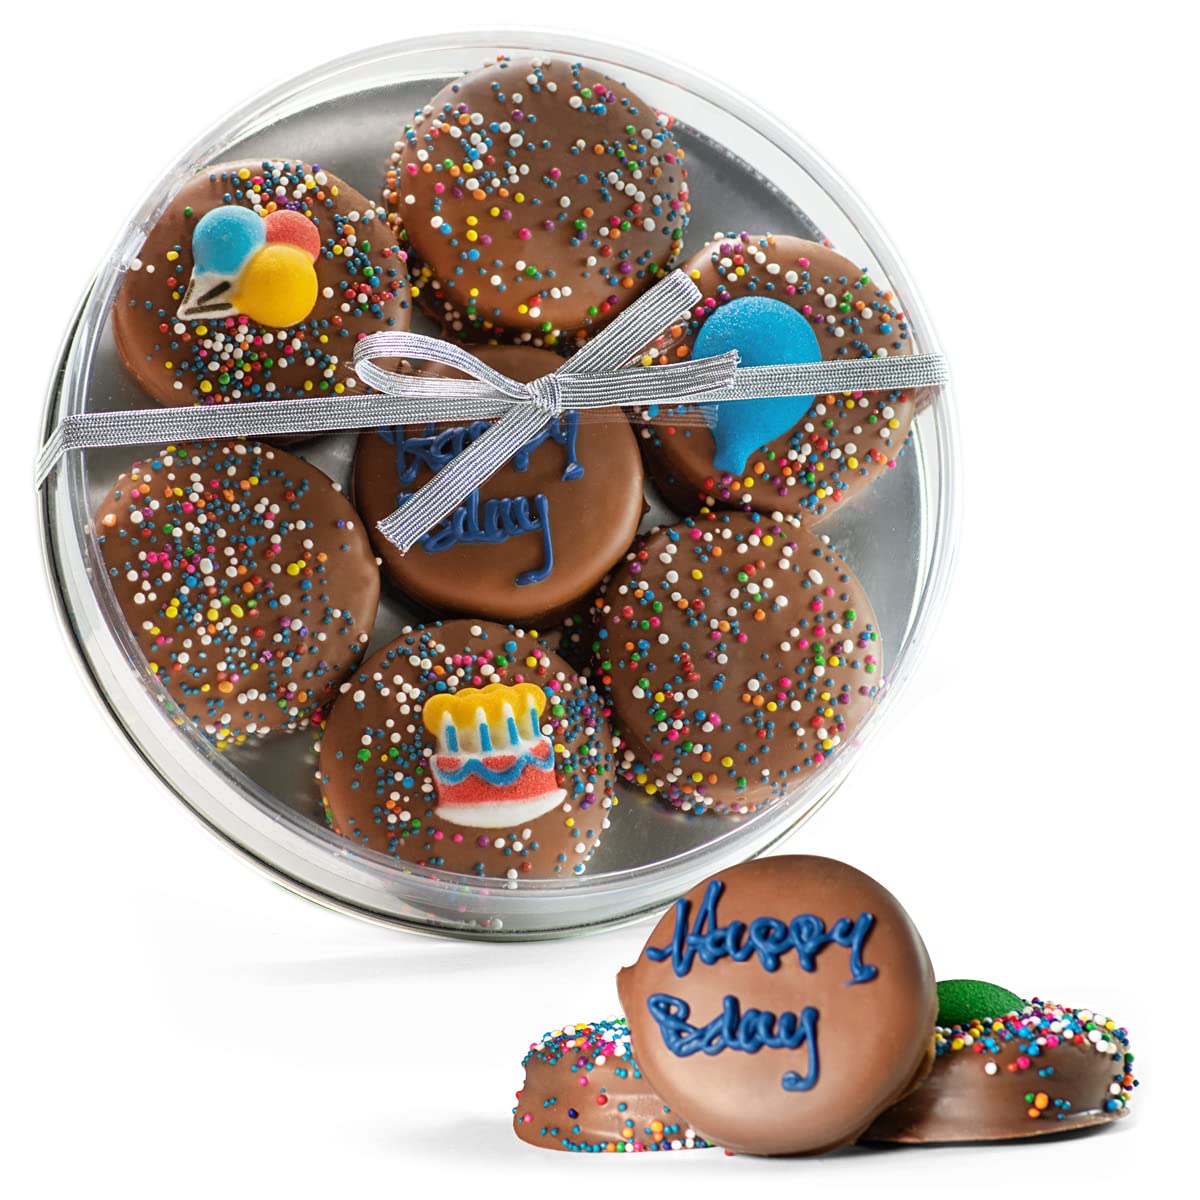 galletas oreo decoradas para cumpleaños